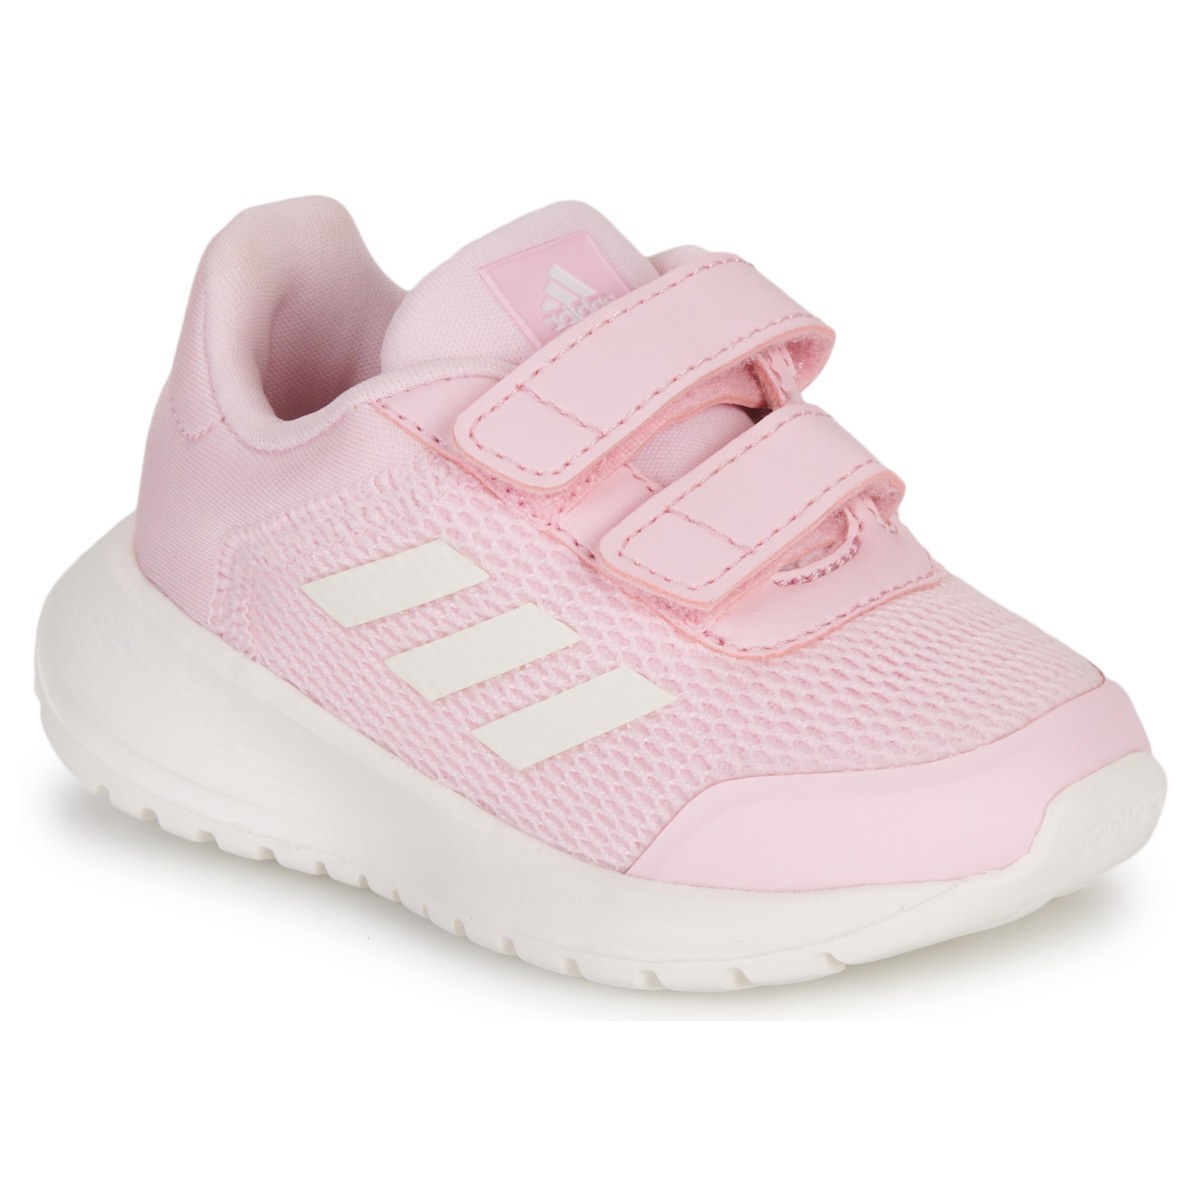 adidas Tensaur Run Schoenen - Clear Pink / Core White / Clear Pink, Clear Pink / Core White / Clear Pink